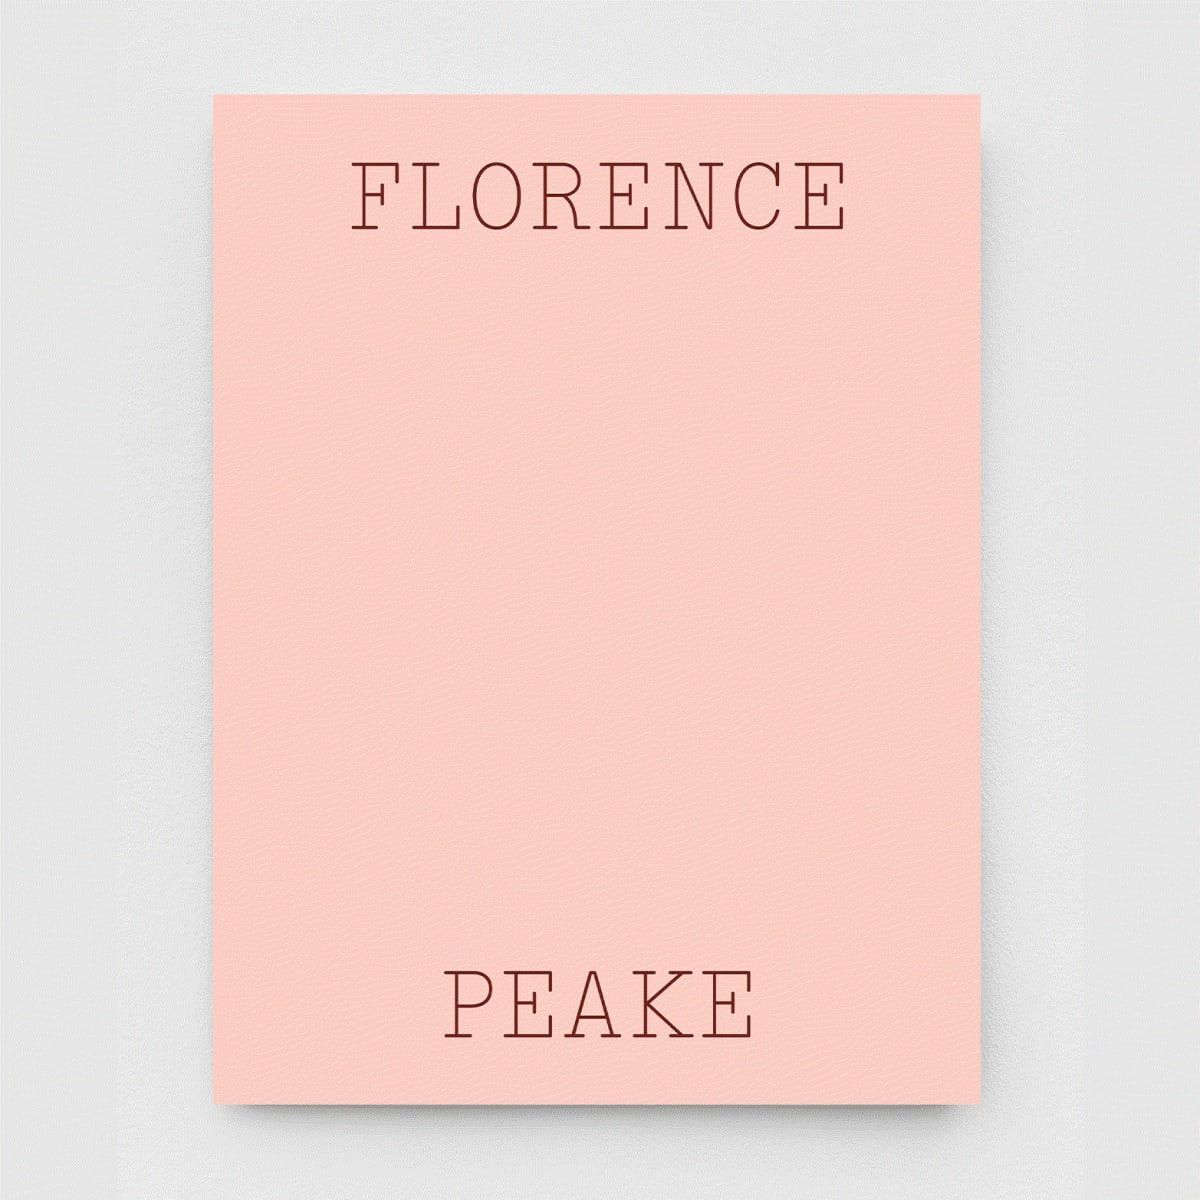 Florence Peake